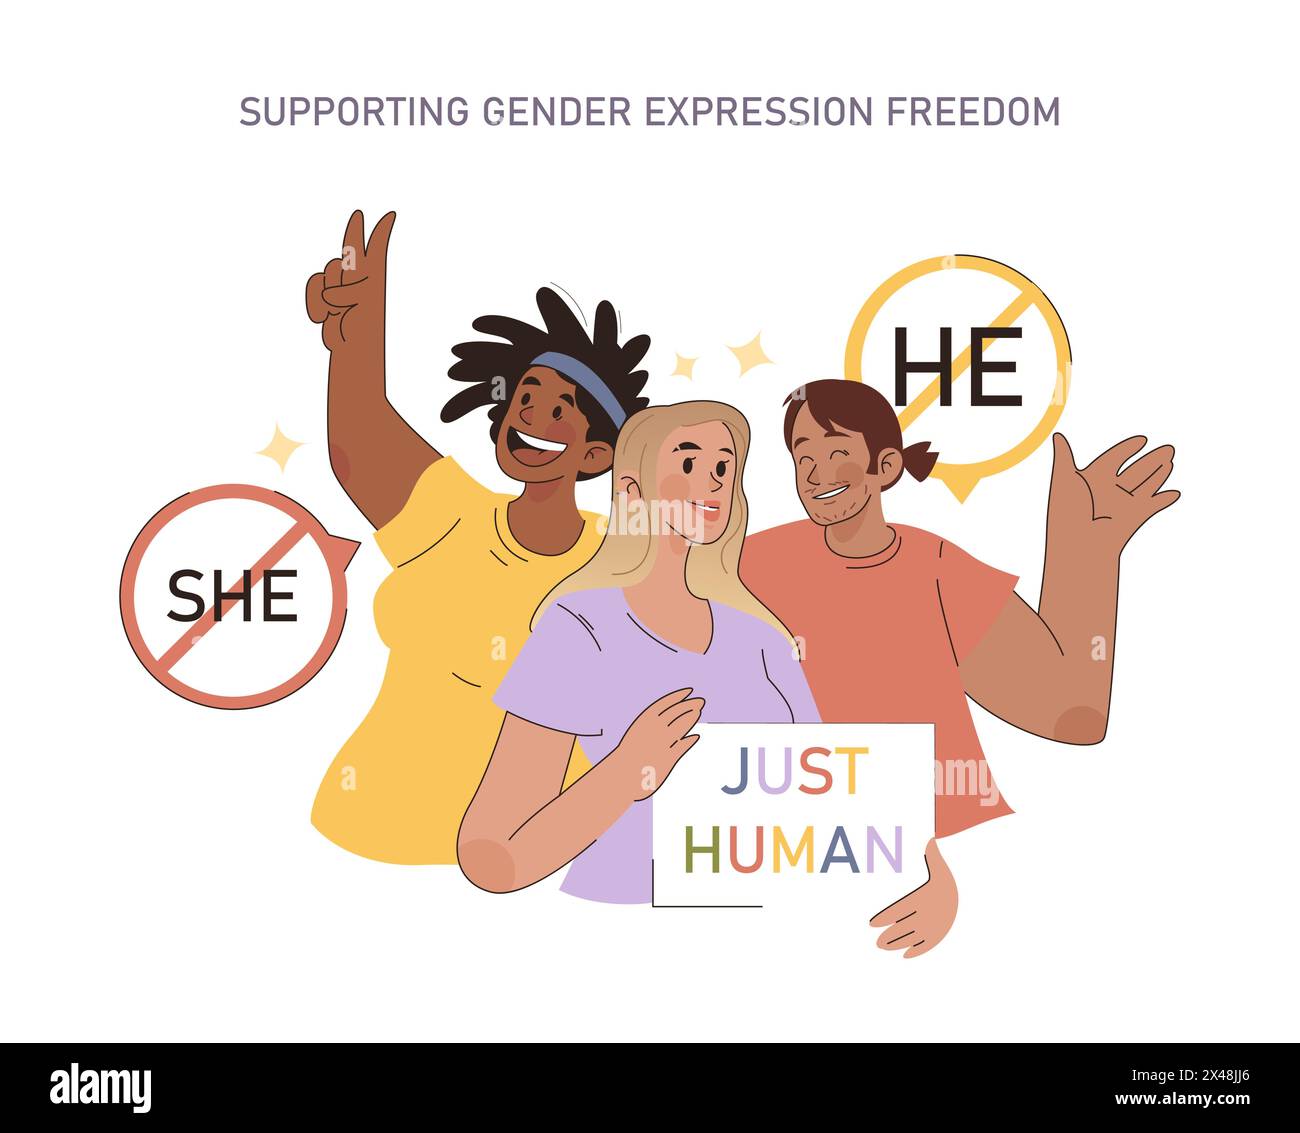 Supportare il concetto di libertà di espressione di genere. Alleati gioiosi che difendono il diritto all'identità di genere con positività e unità. Abbracciare l'umanità oltre le etichette. Illustrazione Vettoriale